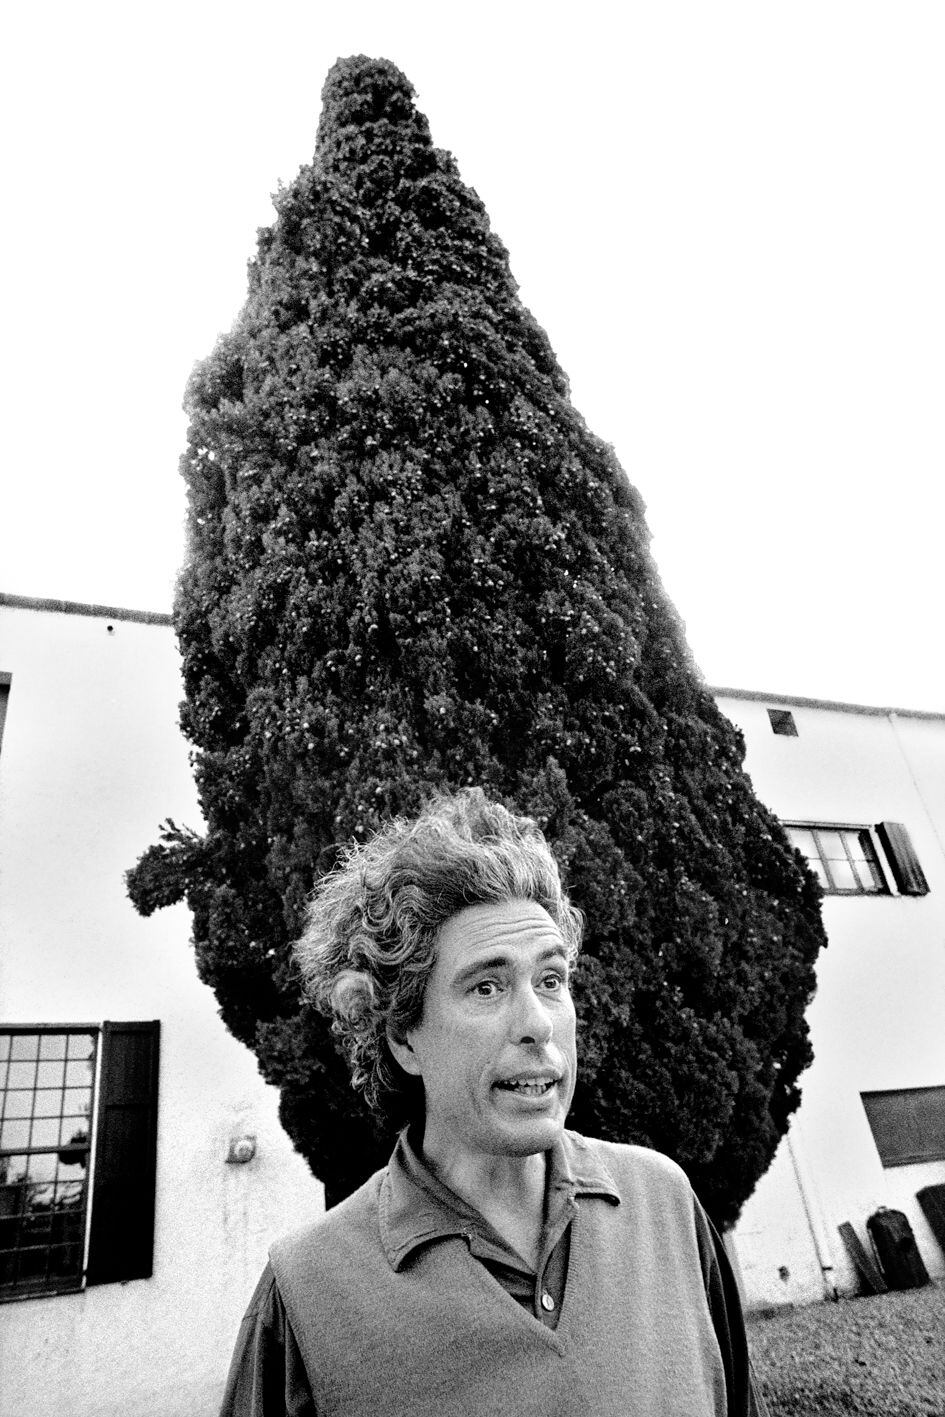 'Antoni Pitxot, pintor amigo de Dalí'. Portlligat, 1979. Socías ha sido editor de publicaciones como 'Cambio 16', 'Madrid me mata', 'Cinemanía' o 'El País Semanal'.